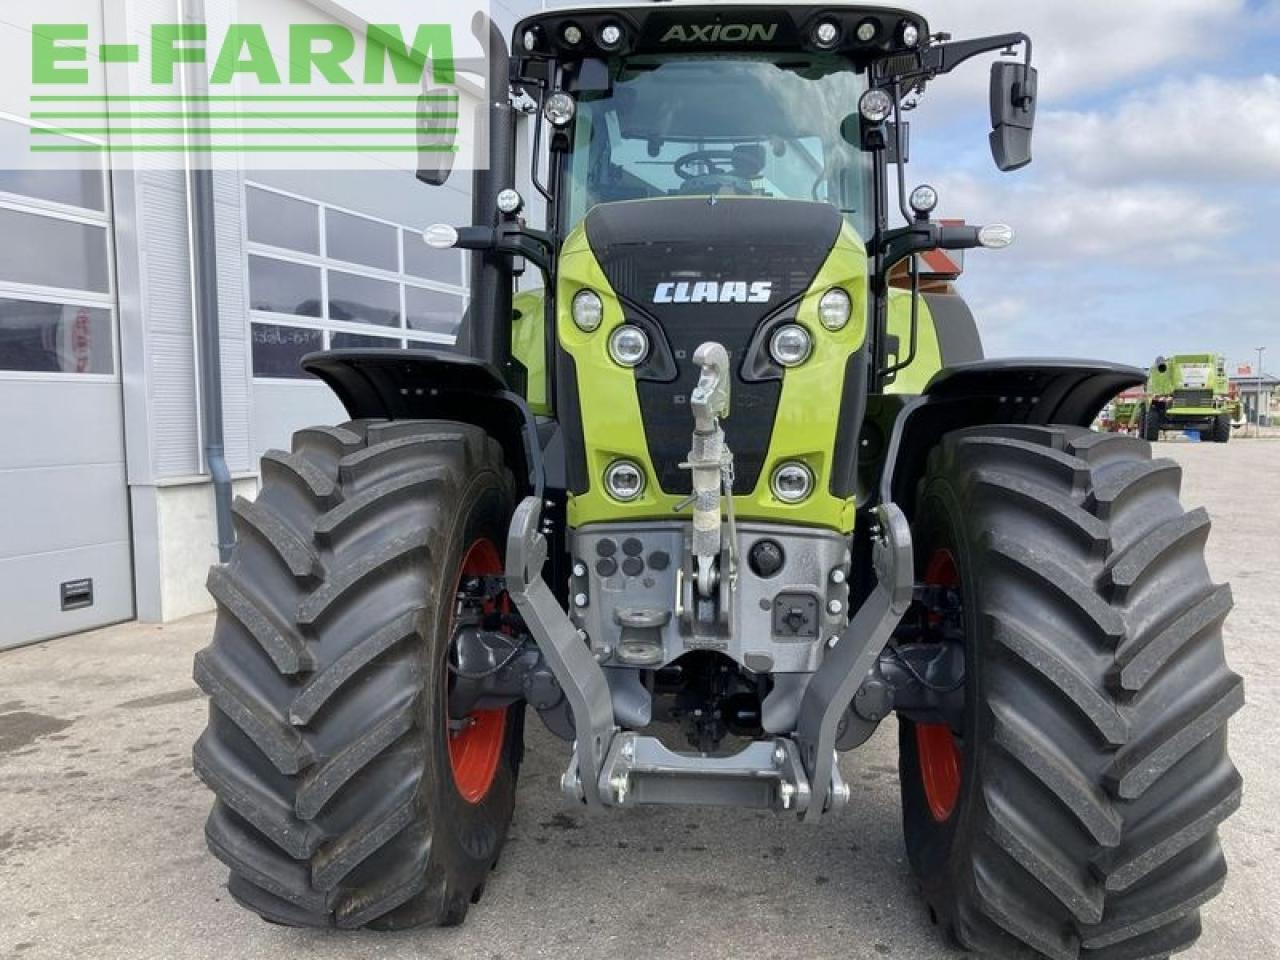 Farm tractor CLAAS axion 870 cmatic cebis